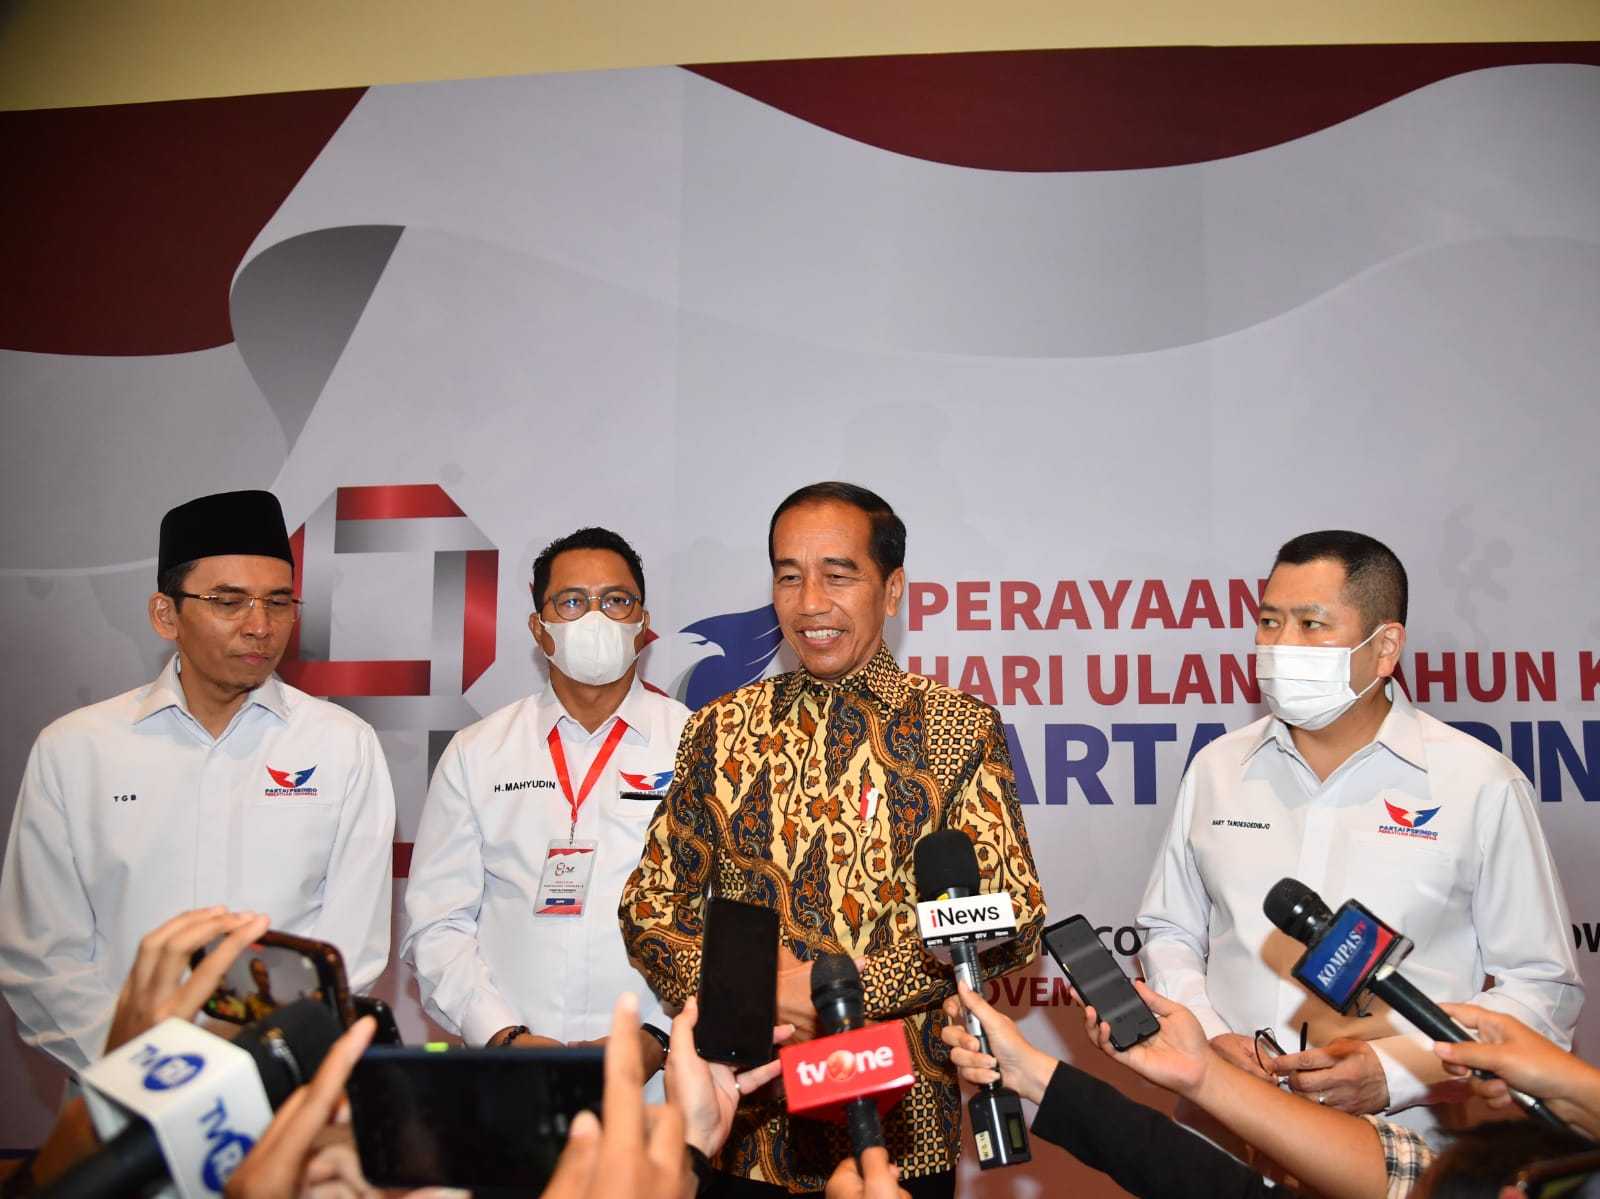 Presiden Jokowi: Pemilunya Sudah Tinggal Februari 2024, Semuanya Hati-hati Keadaan Tidak Sedang Normal